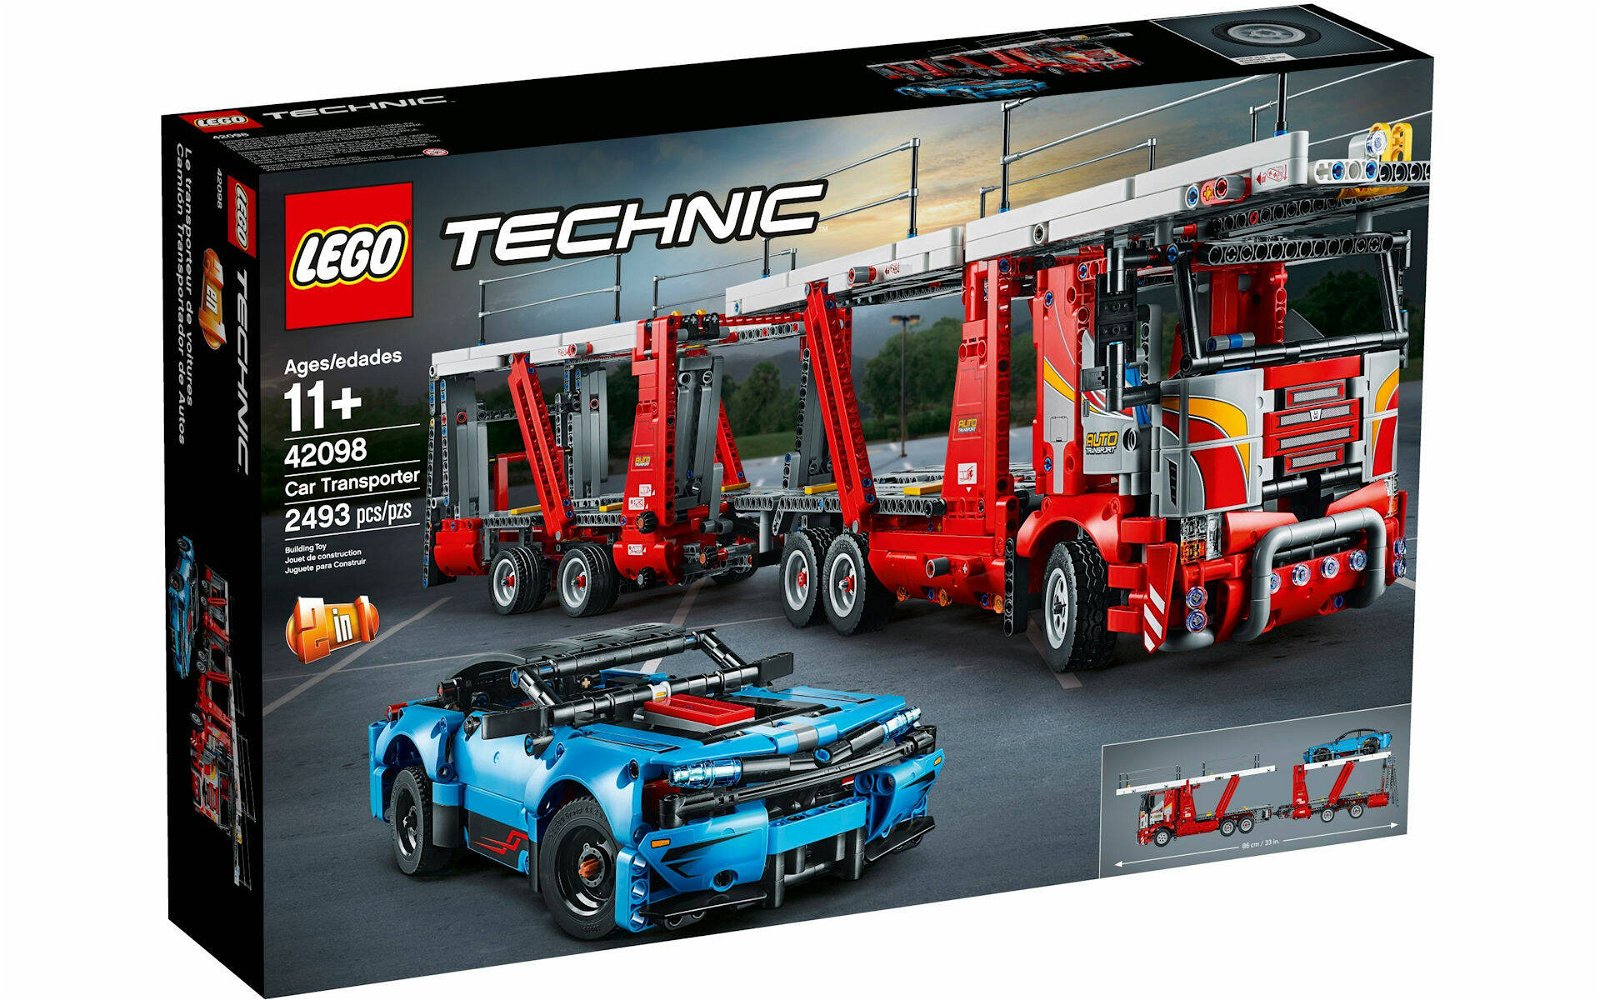 Immagine di LEGO MANIA. Costruiamo insieme il set LEGO Technic # 42098 Bisarca